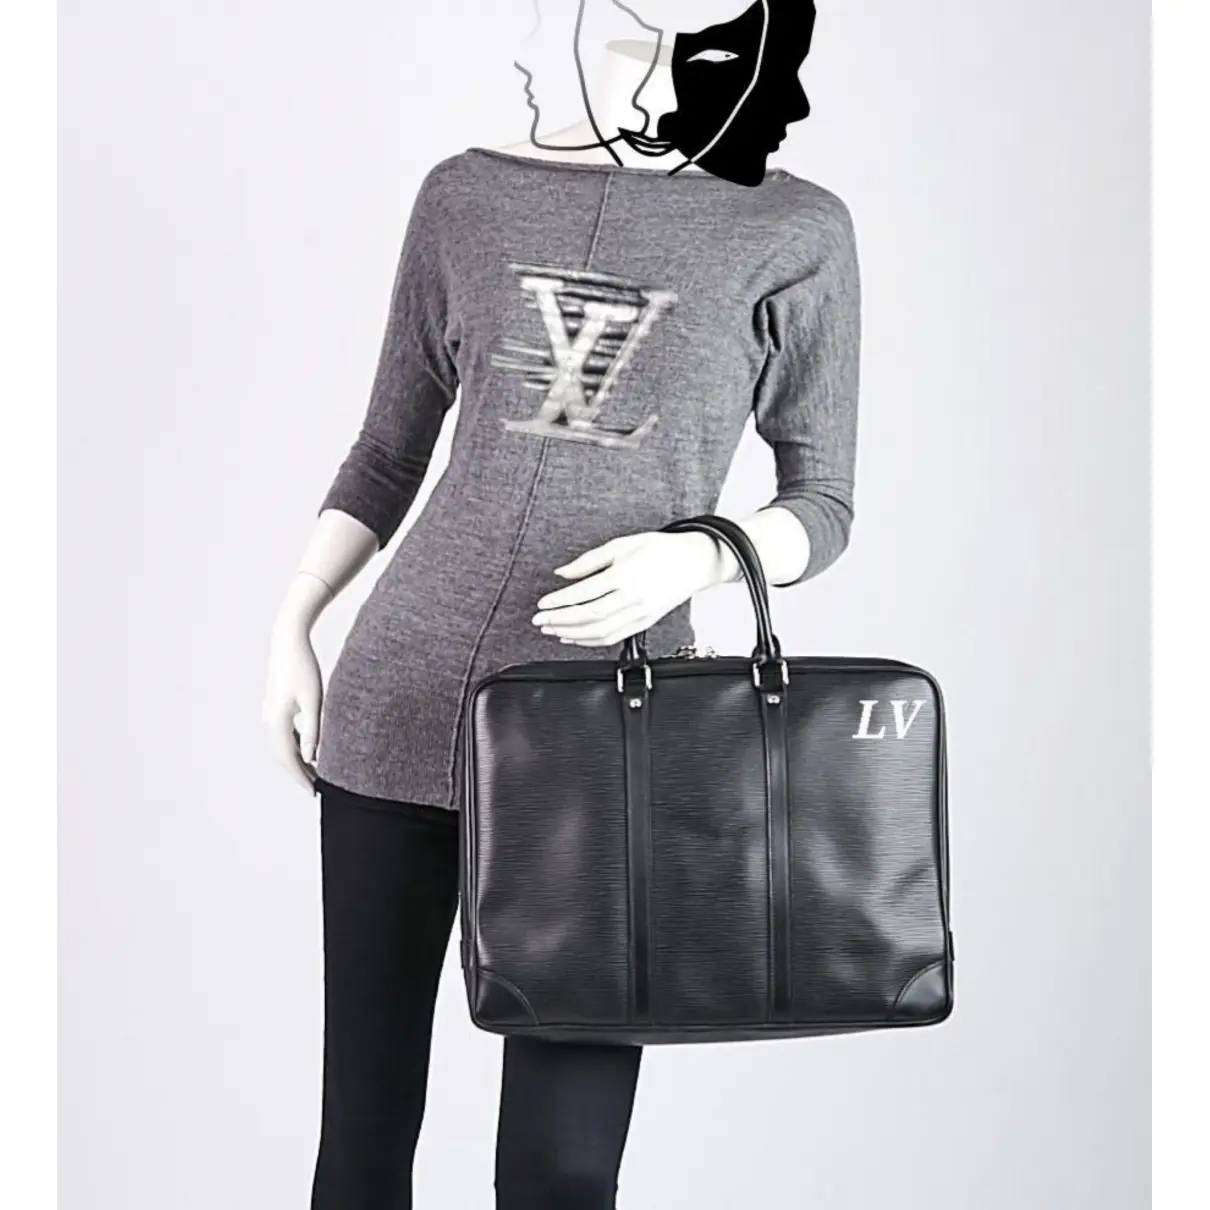 Buy Louis Vuitton Porte Documents Voyage leather bag online - Vintage